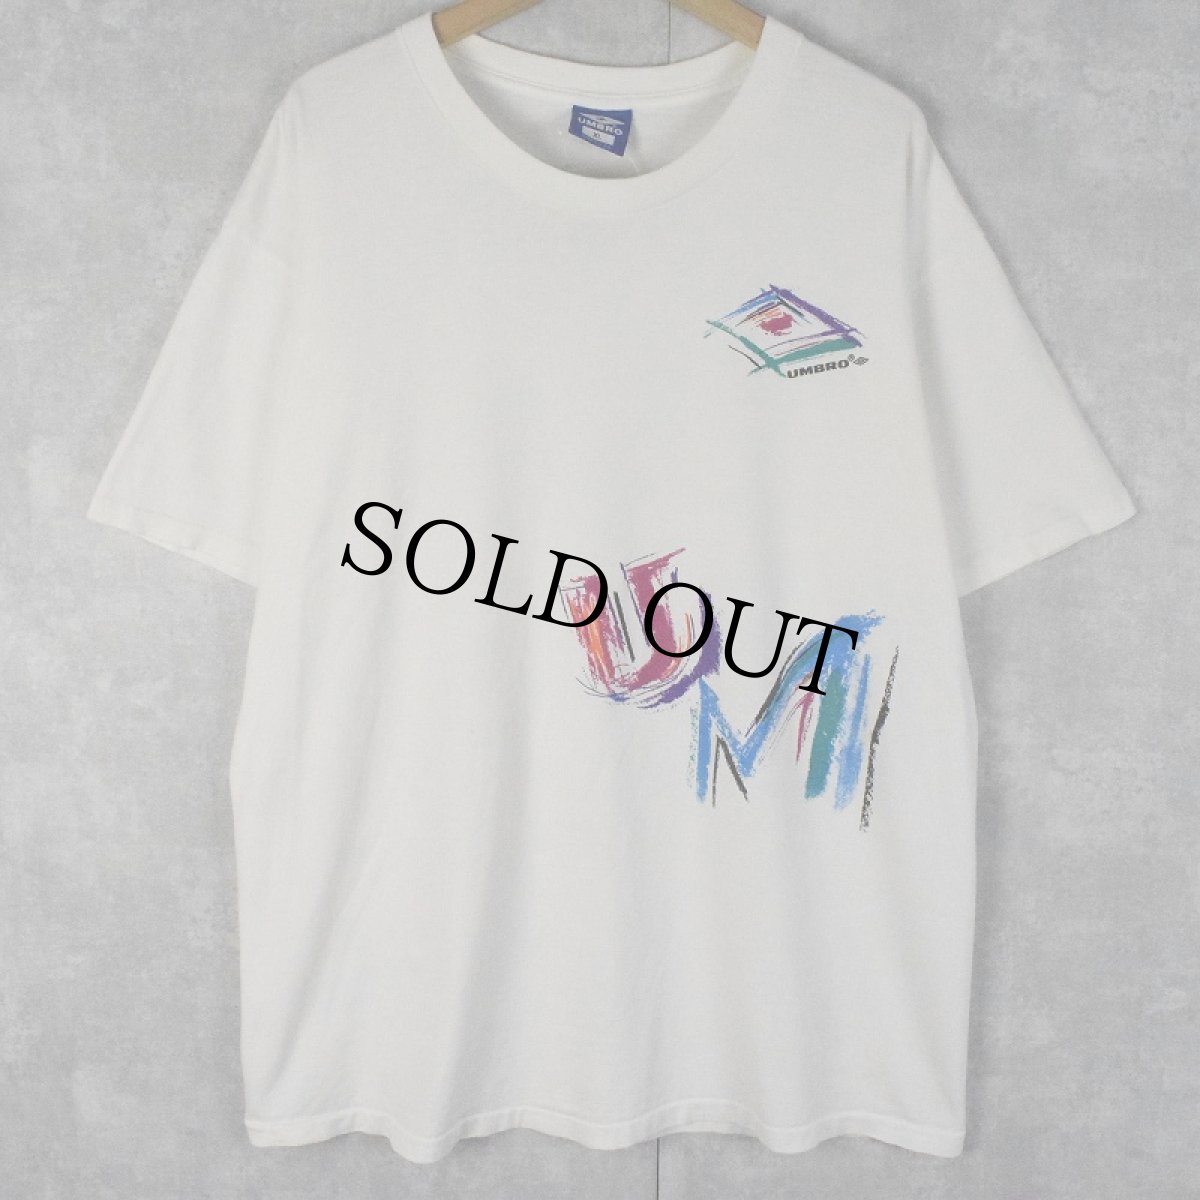 画像1: 90's UMBRO USA製 ロゴプリントTシャツ XL (1)